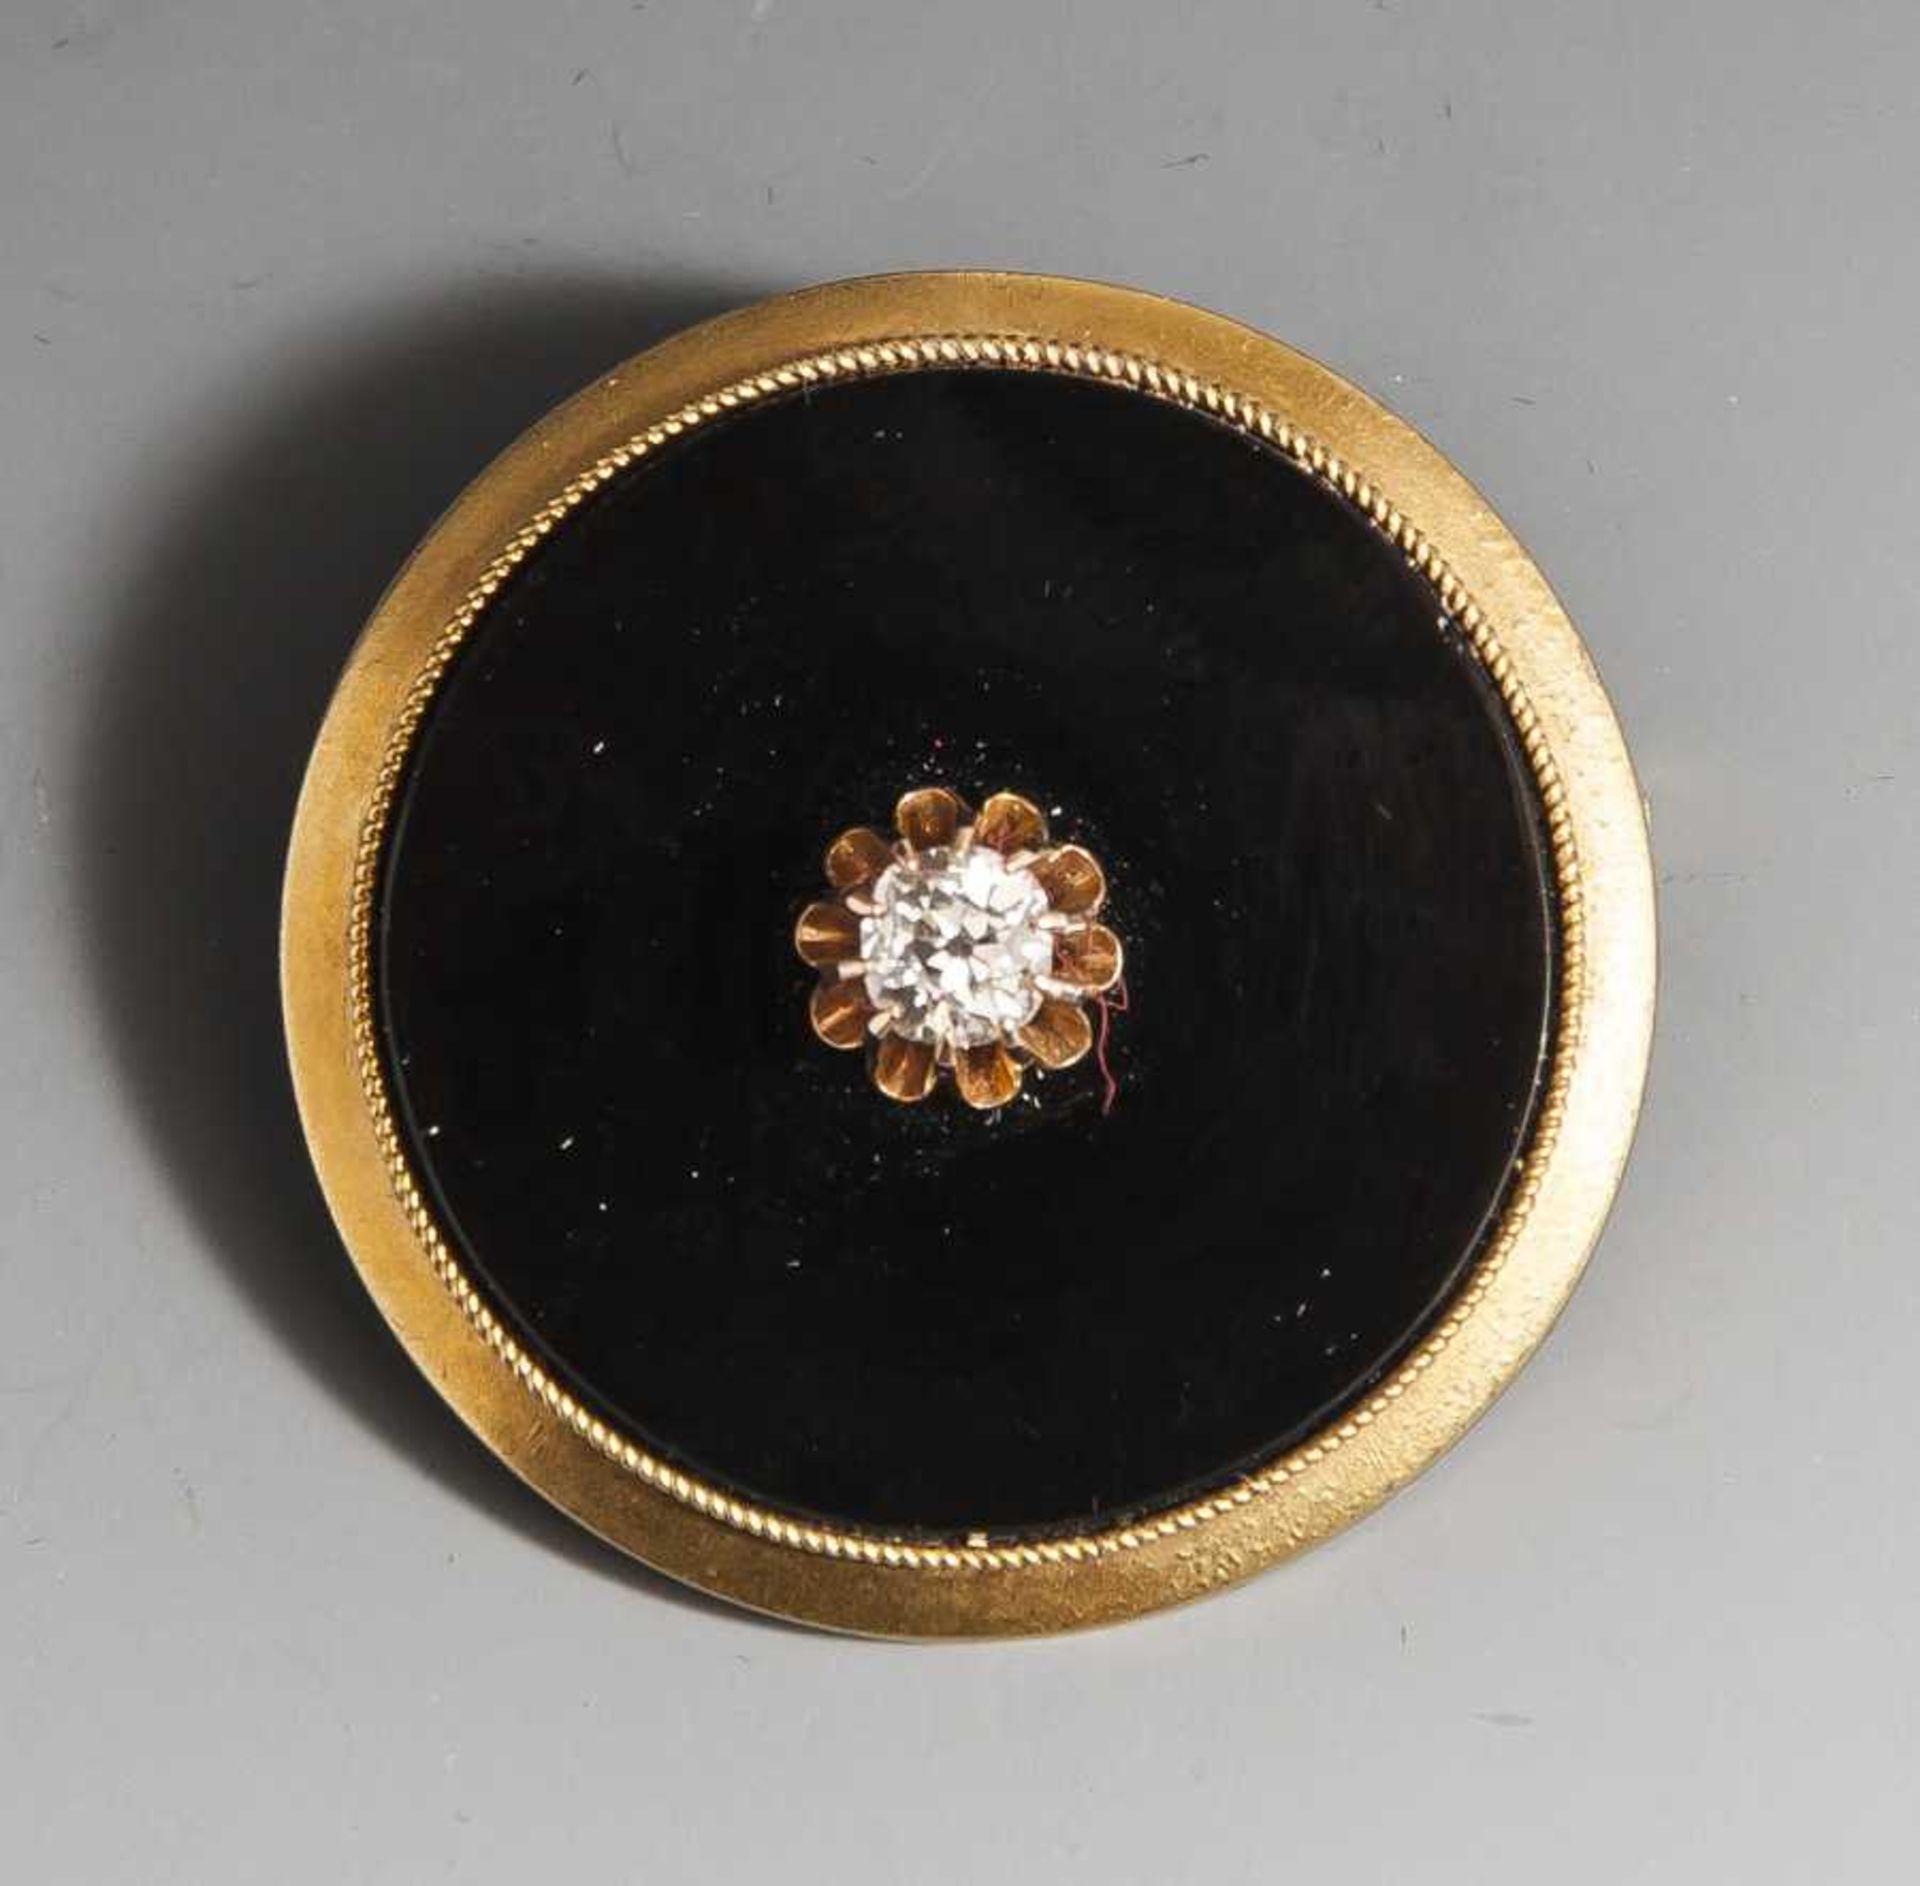 Brosche mit Onyx und Diamant, Gelbgold 585, um 1860/70, runde Onyxscheibe mit zentralem,